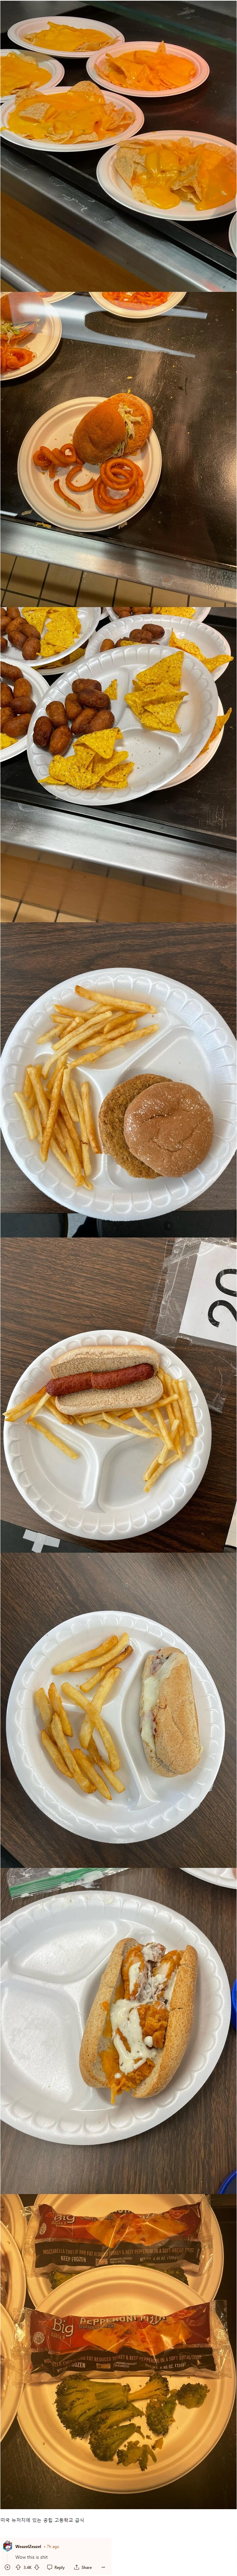 미국 공립 고등학교 급식